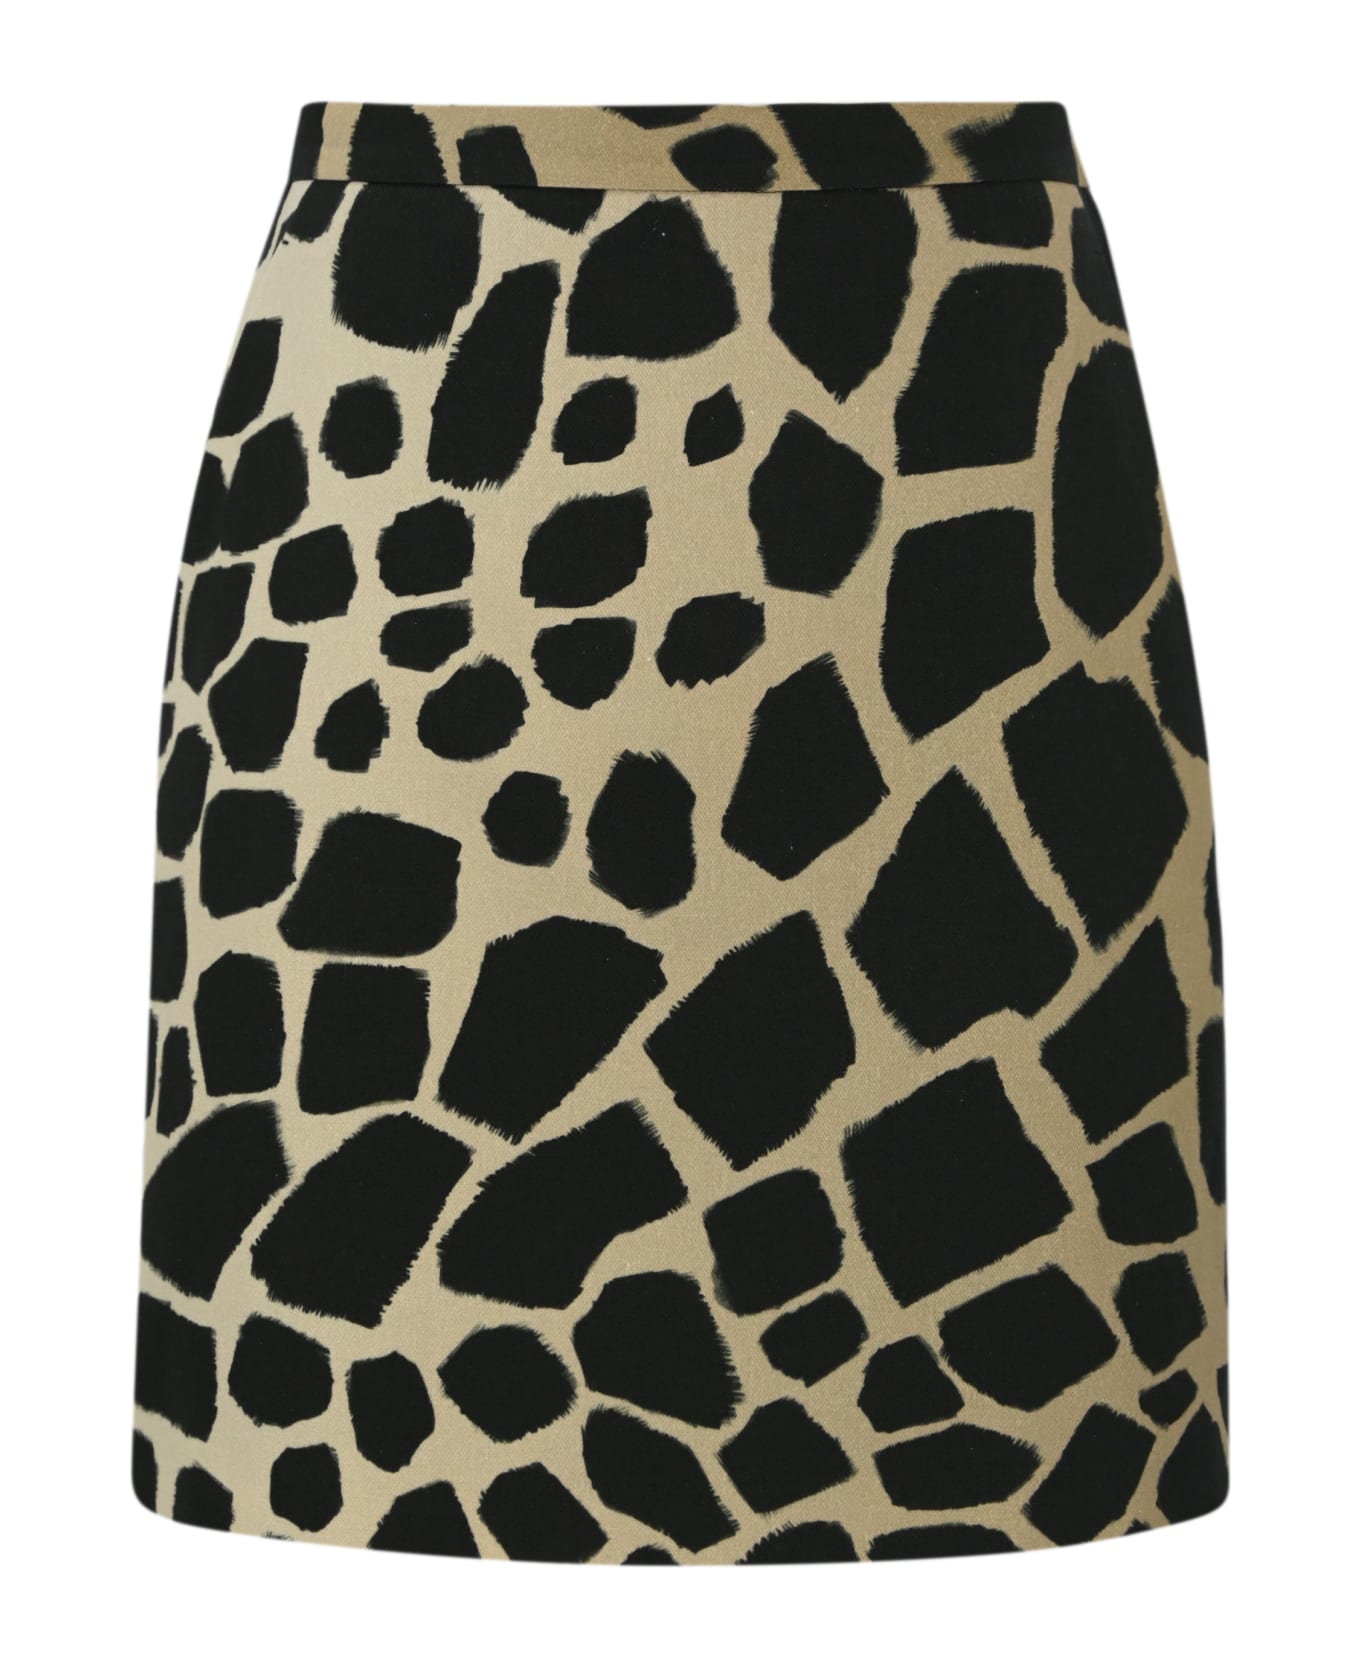 Max Mara Studio 'giovane' Cotton And Linen Skirt - Giraffa